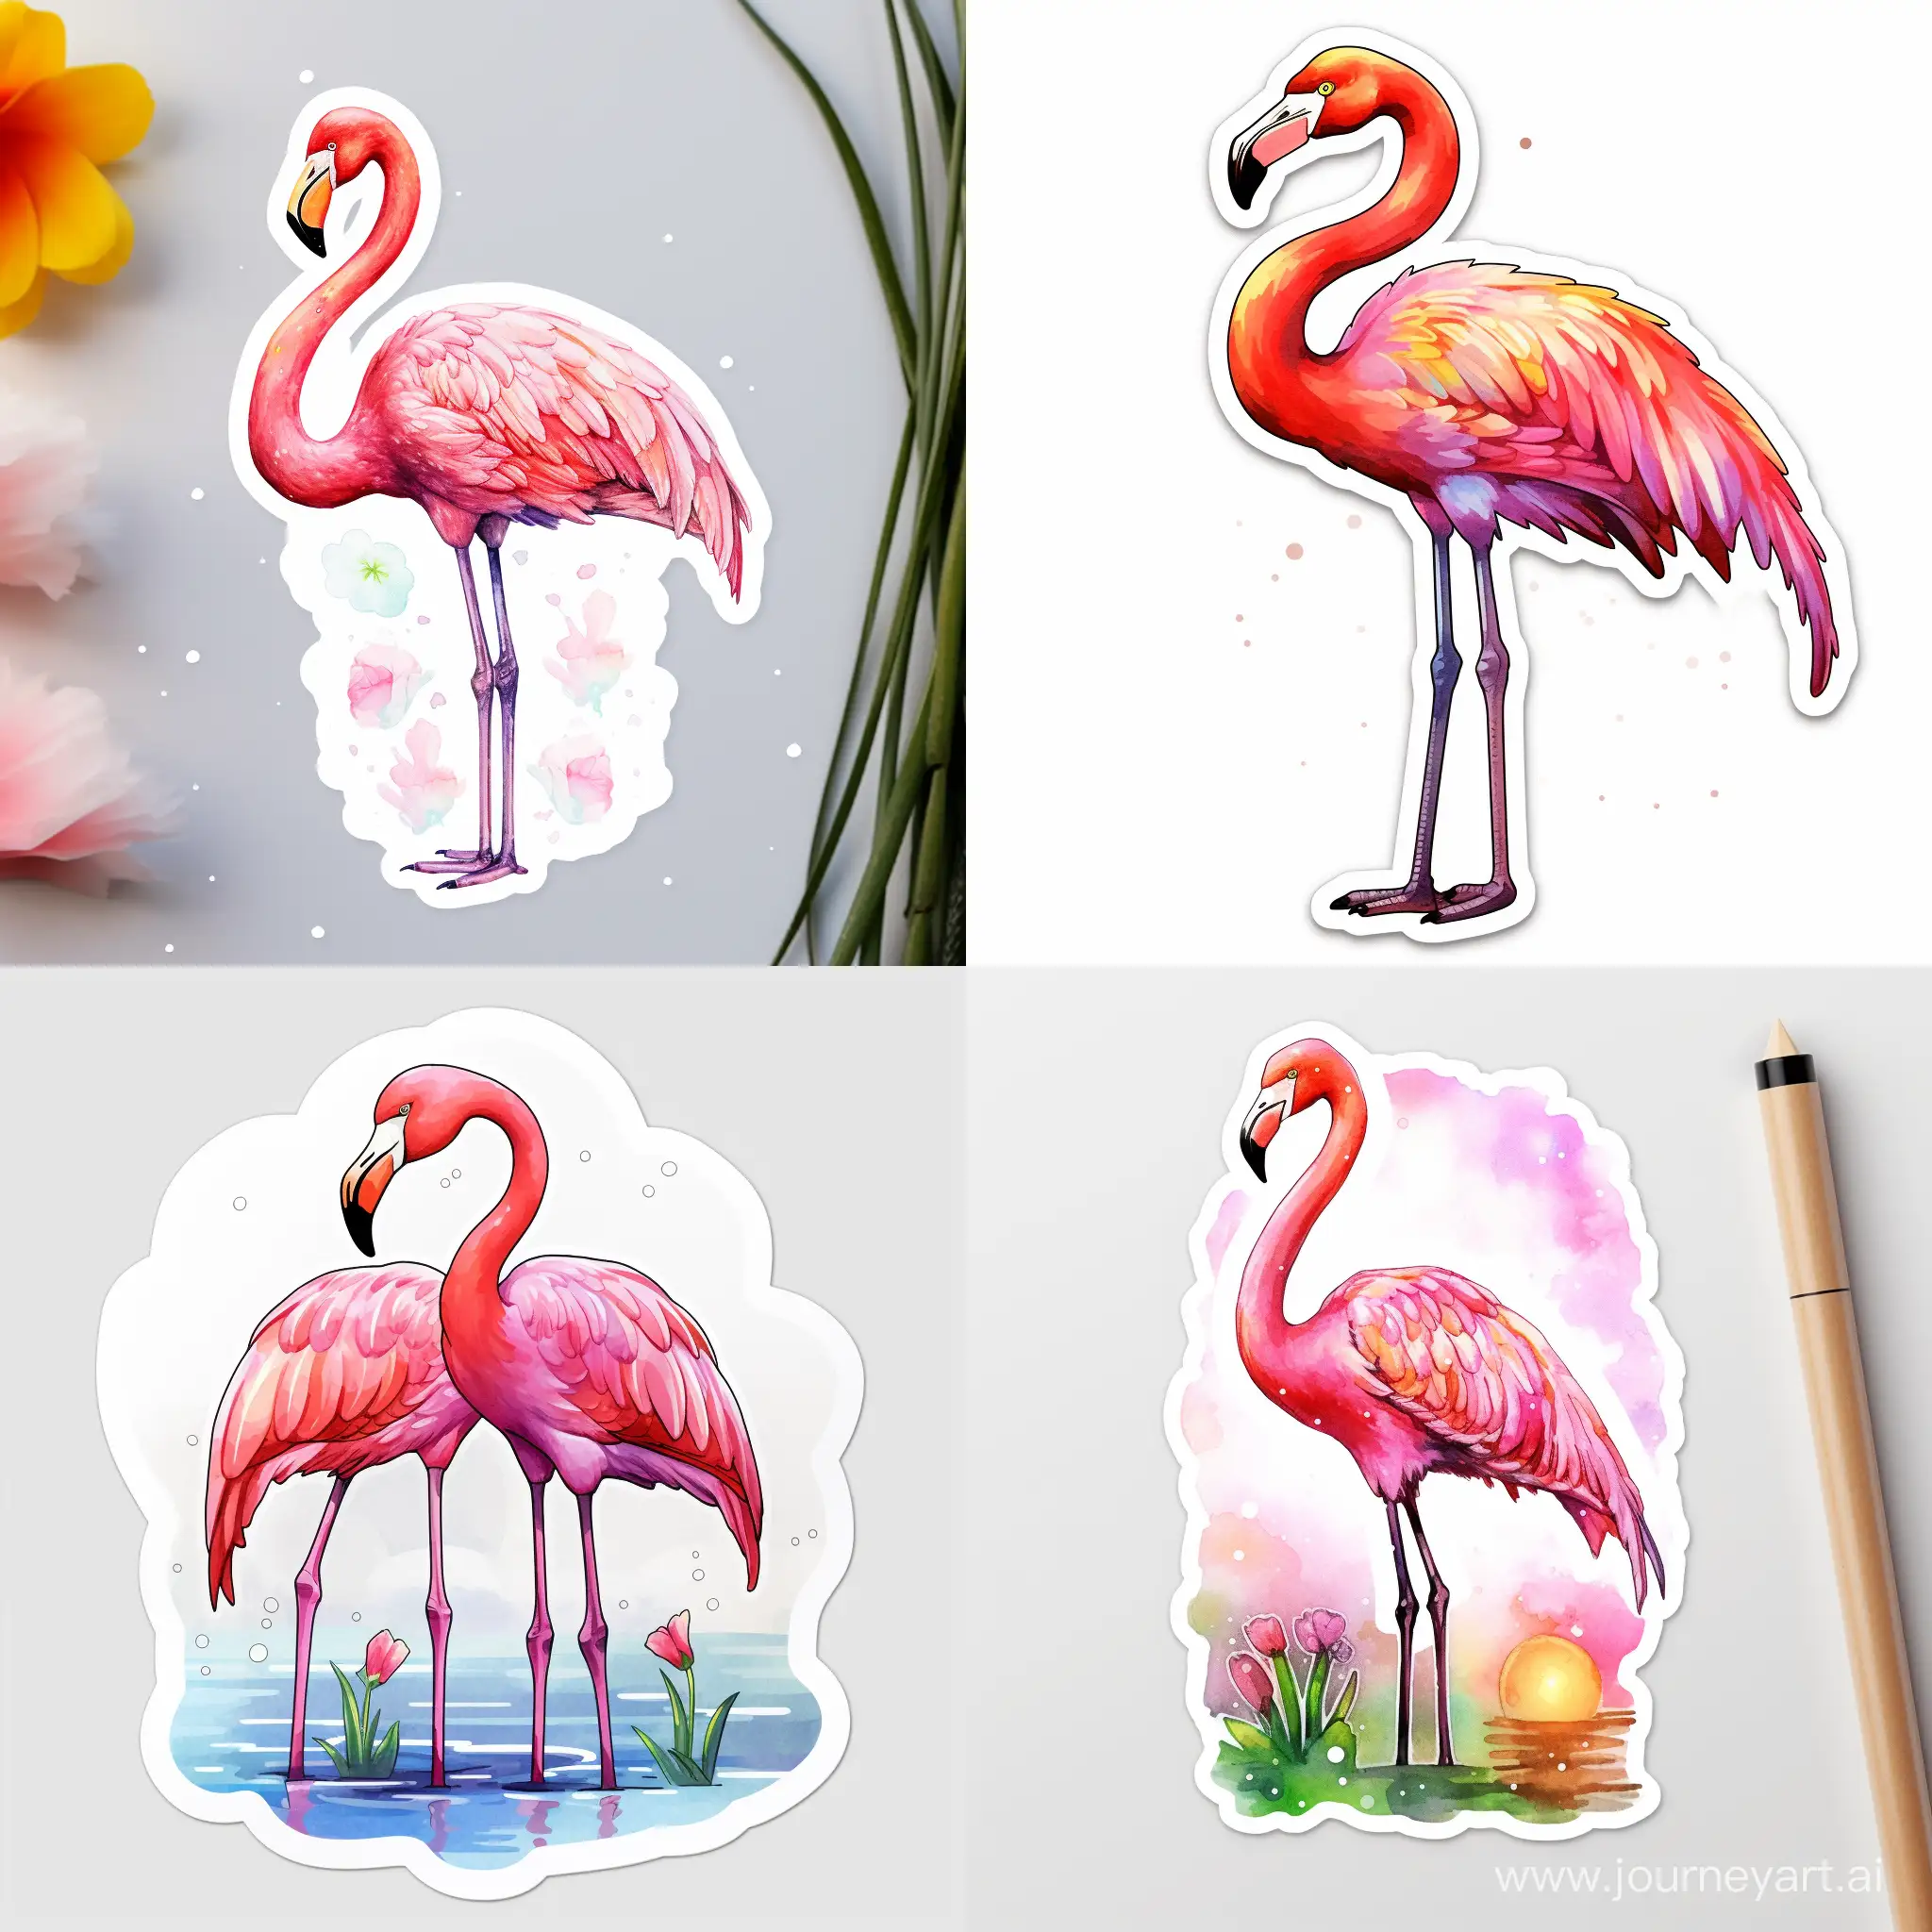 Vibrant-Watercolor-Flamingo-Stickers-Unique-and-Colorful-Artwork